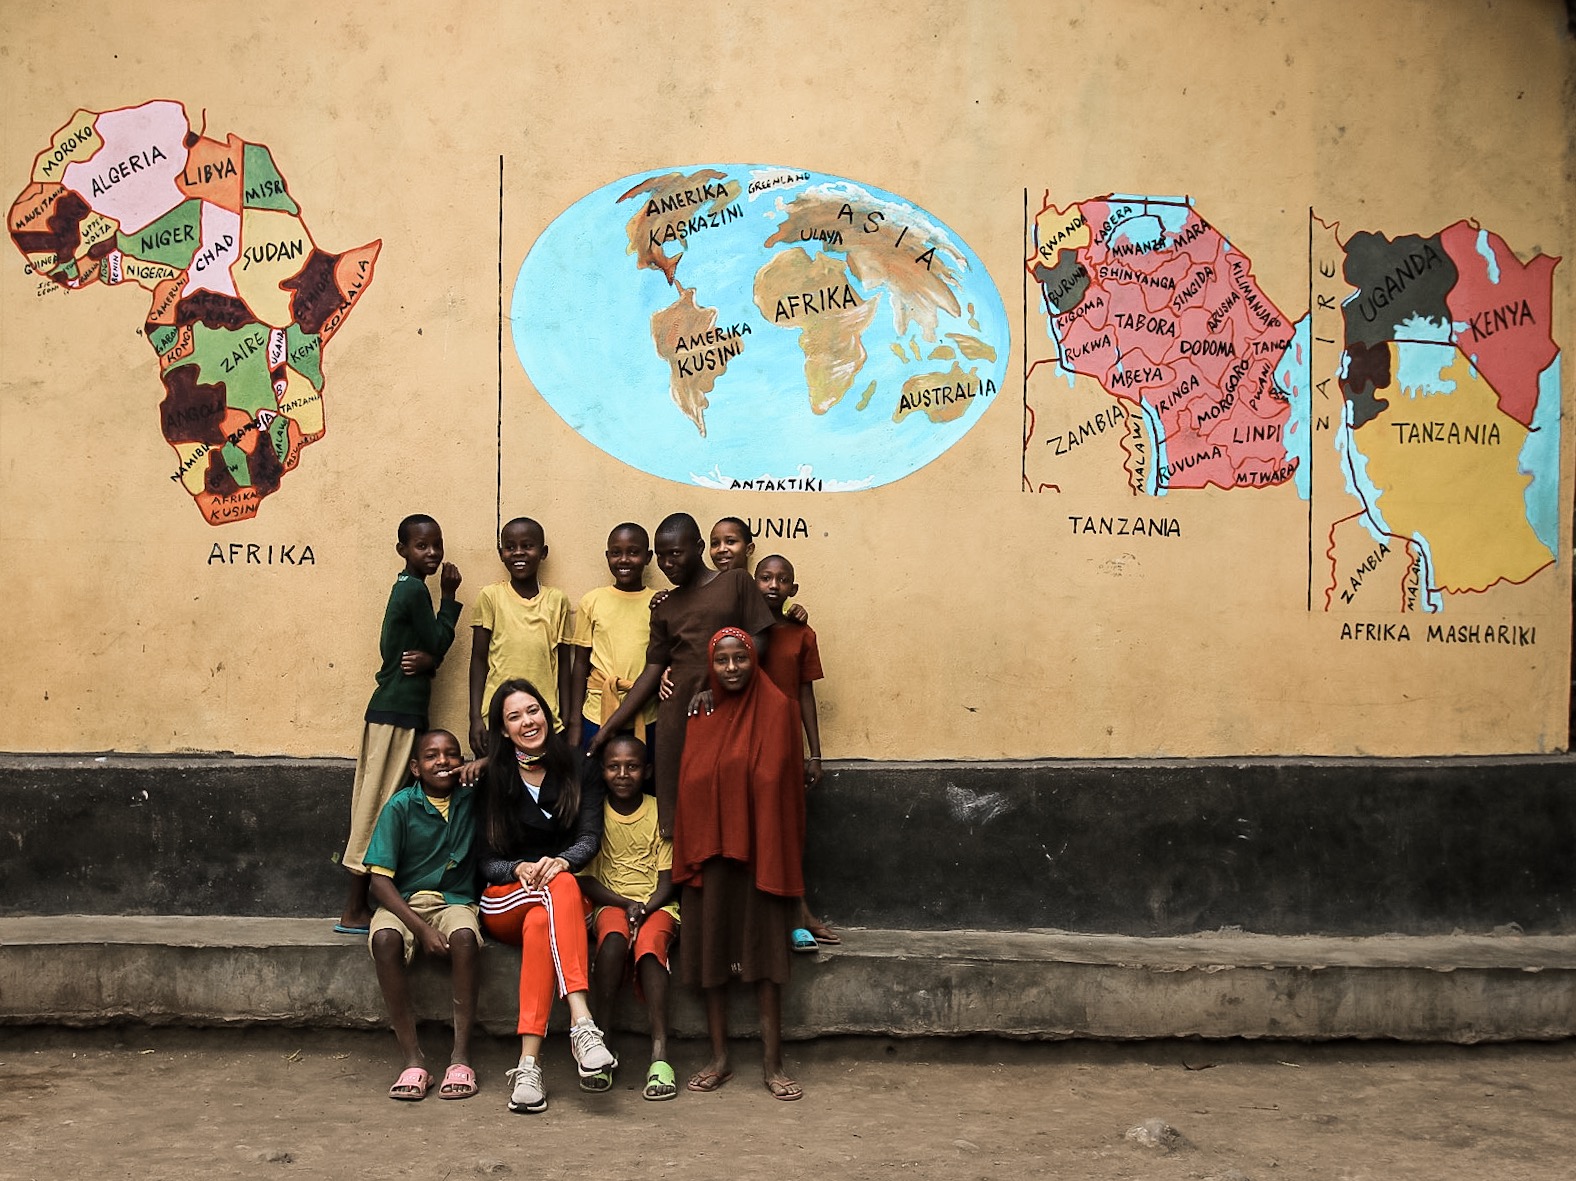 Dijana Kocić sa njenim učenicima u Tanzaniji: "Novcem možemo kupiti stvari i iskustva, ali ono što nam hrani dušu i čini da se osećamo bliski i povezani jedni sa drugima, je kada delimo i radimo stvari zajedno."